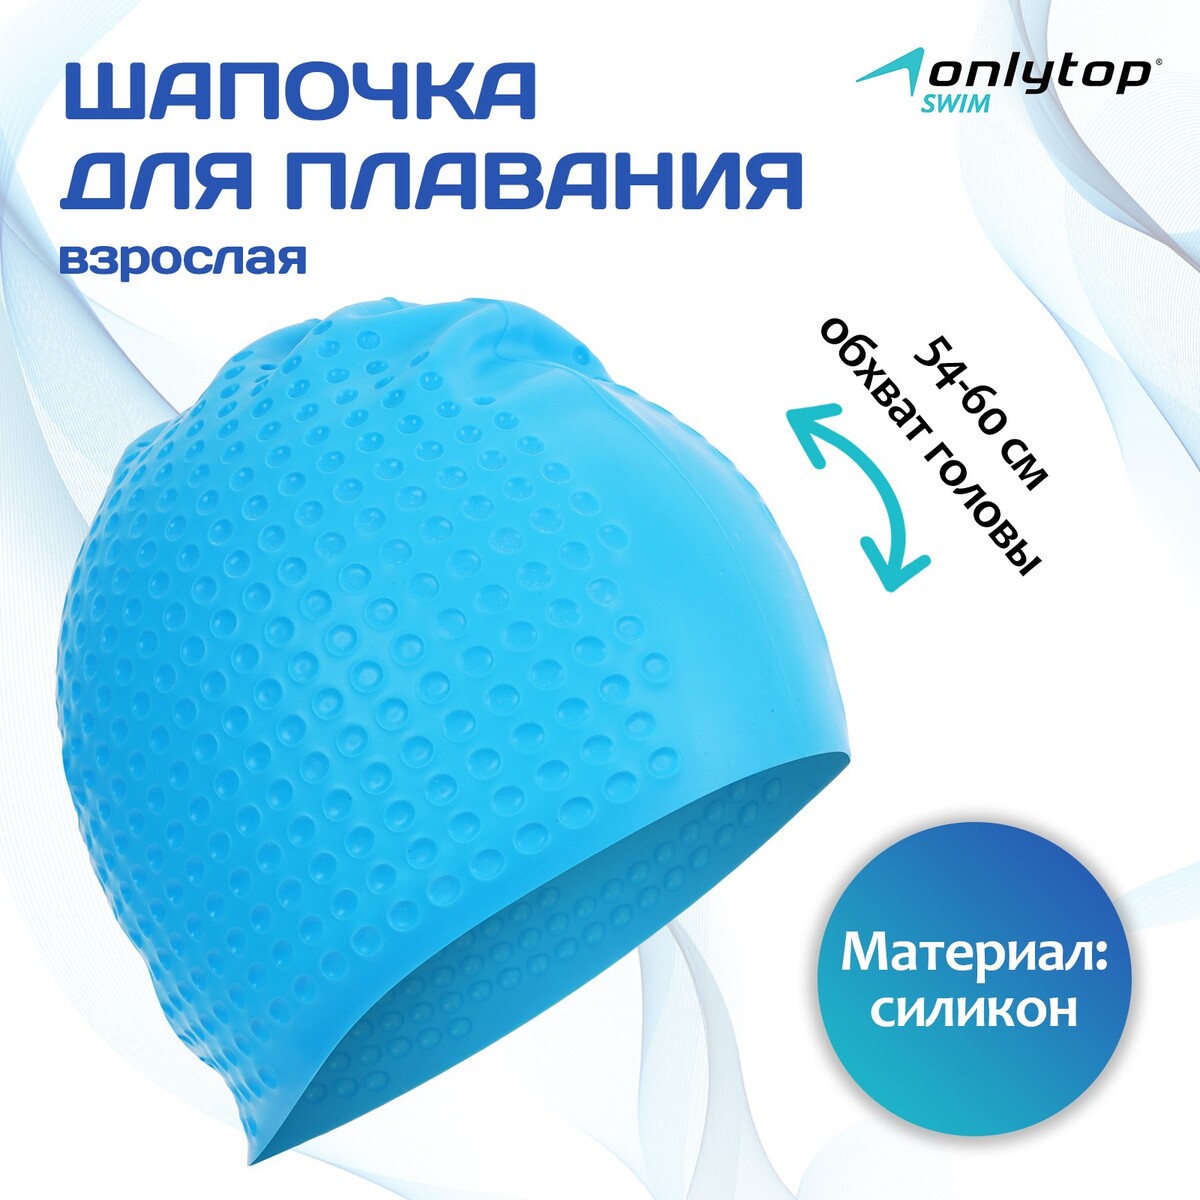 Шапочка для плавания взрослая onlytop, силиконовая, обхват 54-60 см шапочка для плавания sportex текстильная лайкра e36889 1 голубой